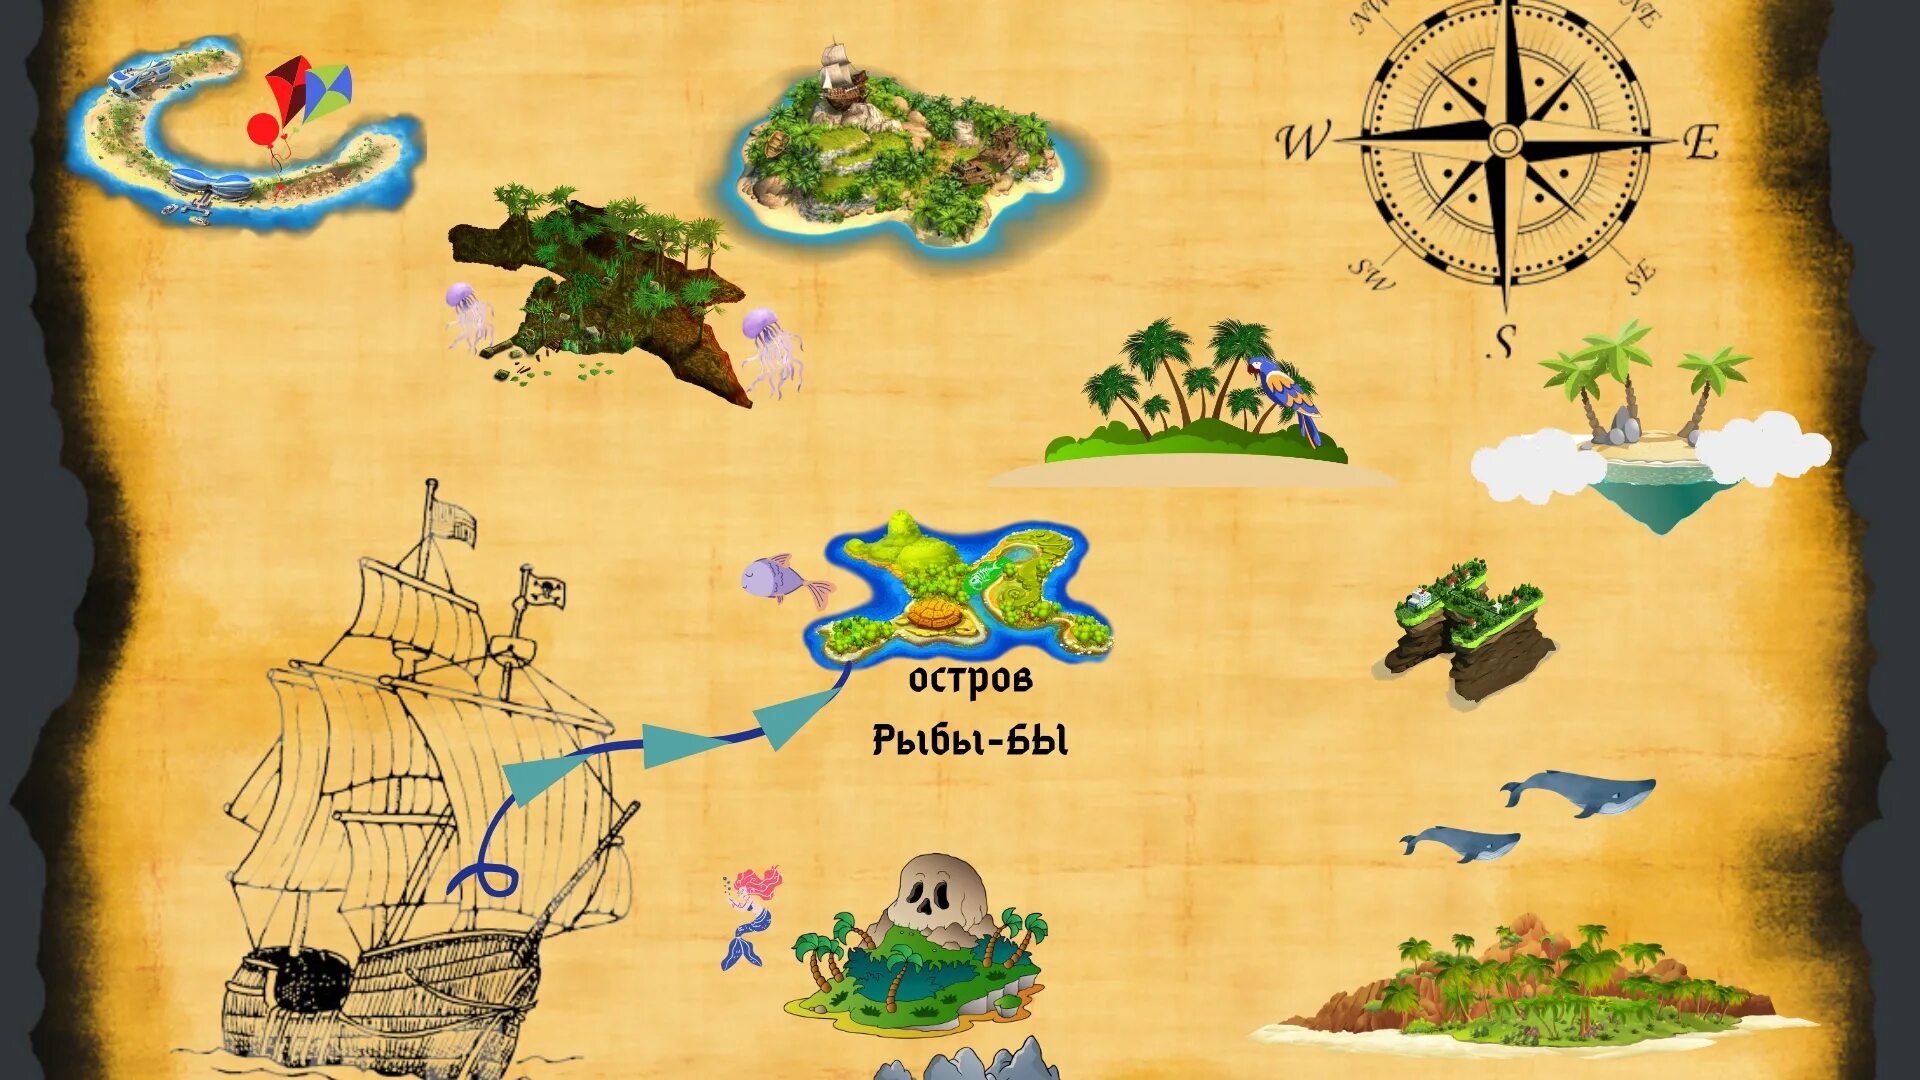 Карта для игры путешествия. Карта путешествия для детей. Карта путешествия по островам для детей. Морская карта для детей. Игры путешествия для школьников